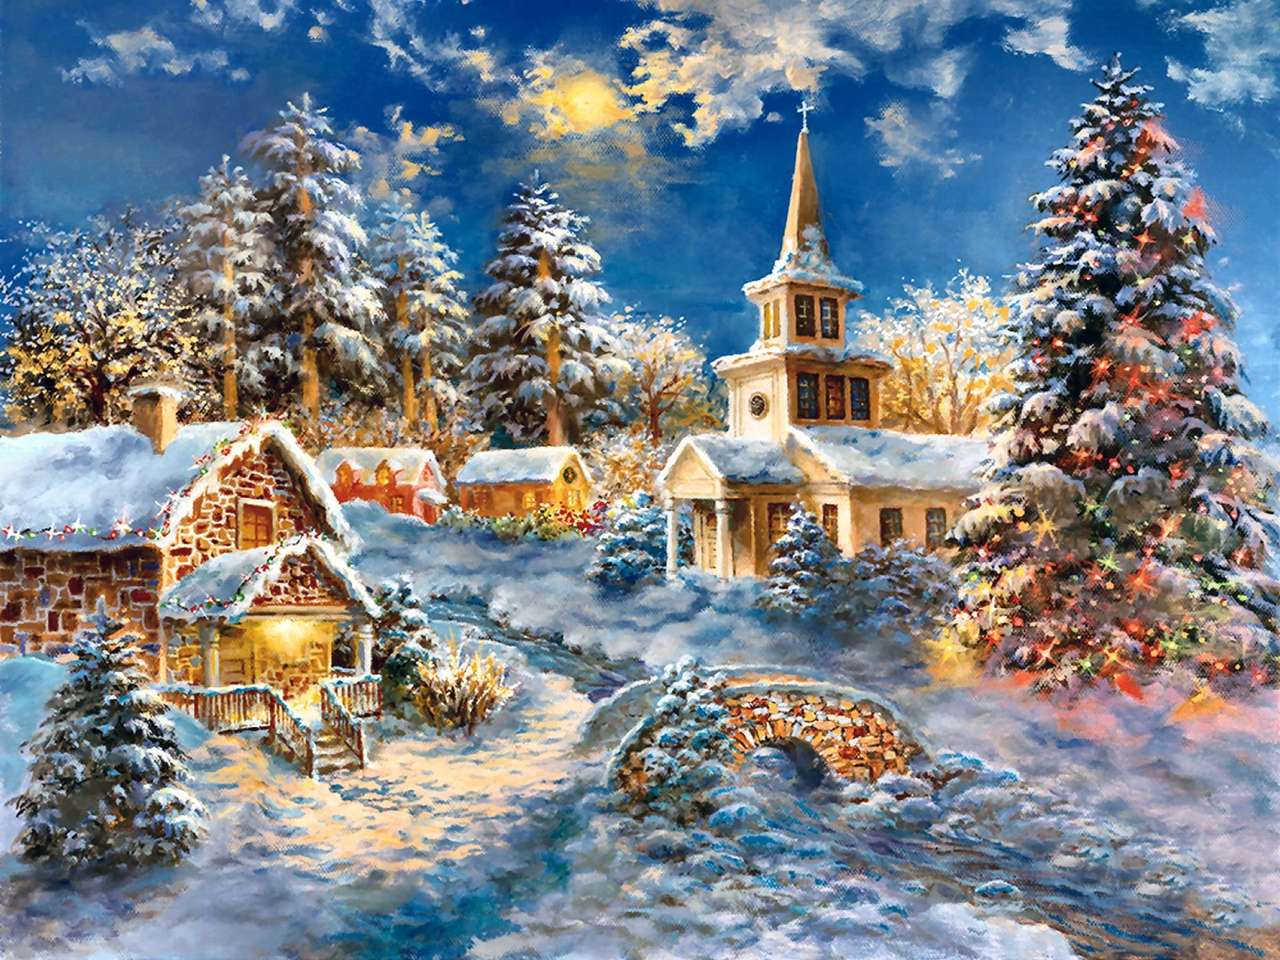 Malowanie Świąt Bożego Narodzenia na wsi puzzle online